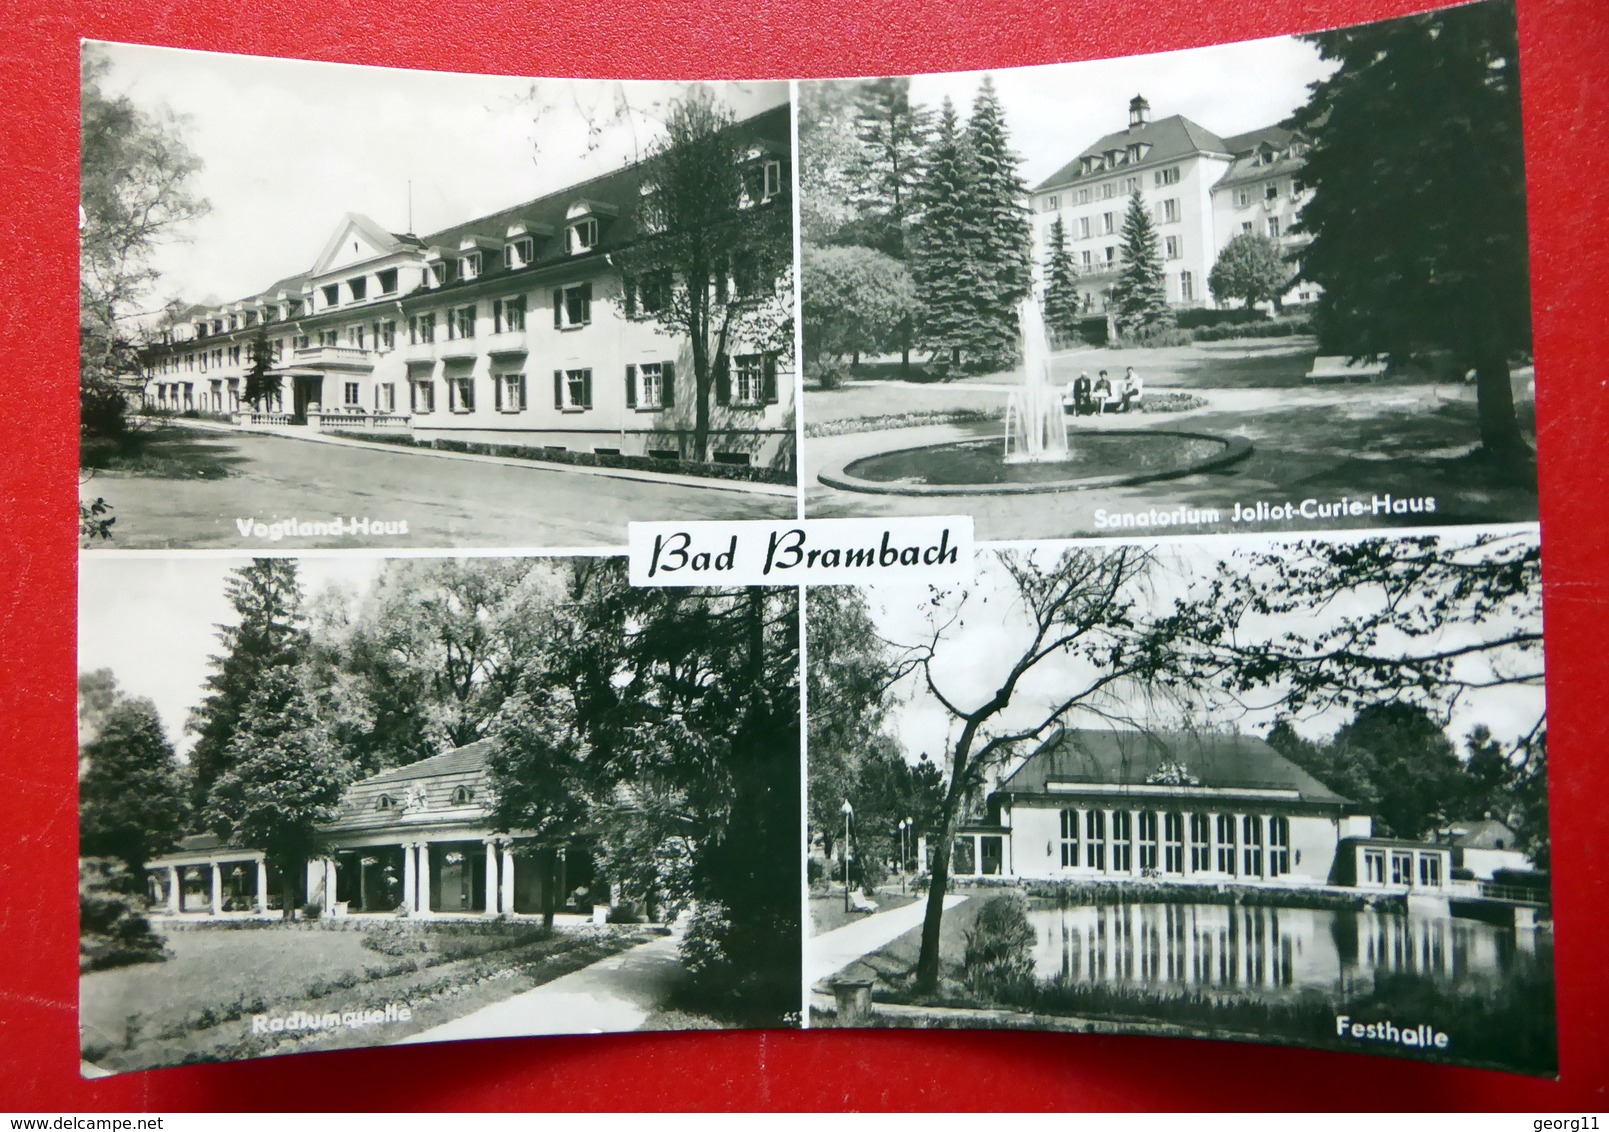 Bad Brambach - Radium Quelle - Sanatorium - Festhalle - Vogtland - DDR 1967 - Echtfoto - Merseburg